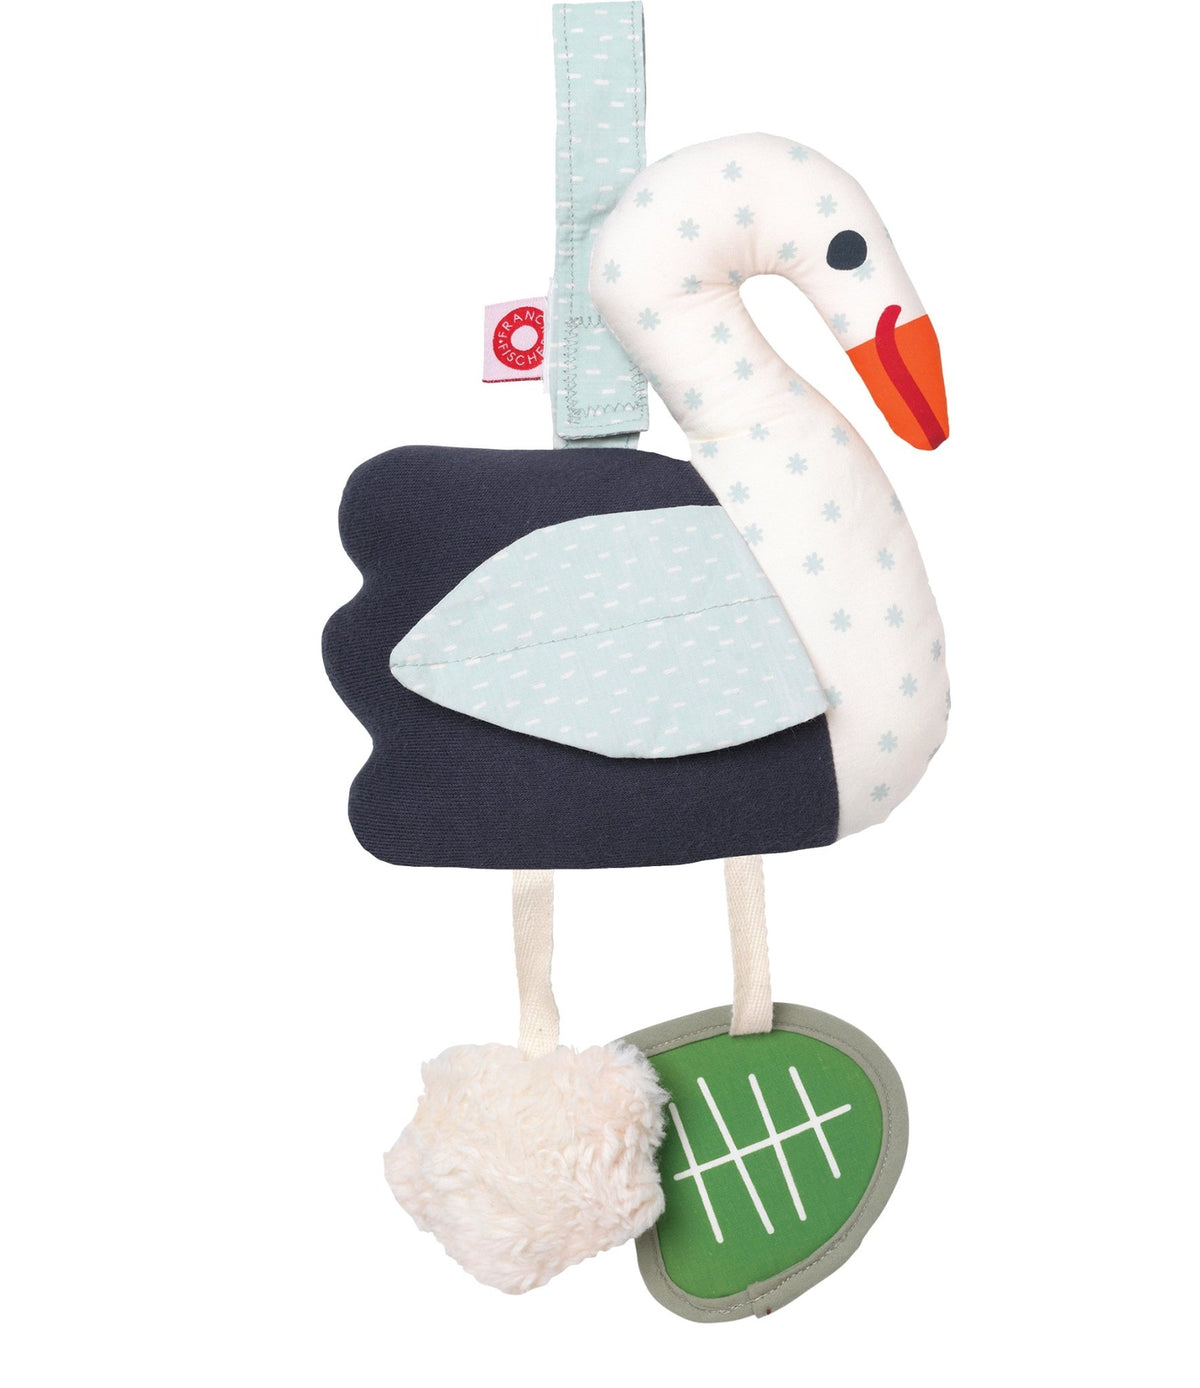 Filippa Swan Activity Toy by Franck & Fischer - Maude Kids Decor